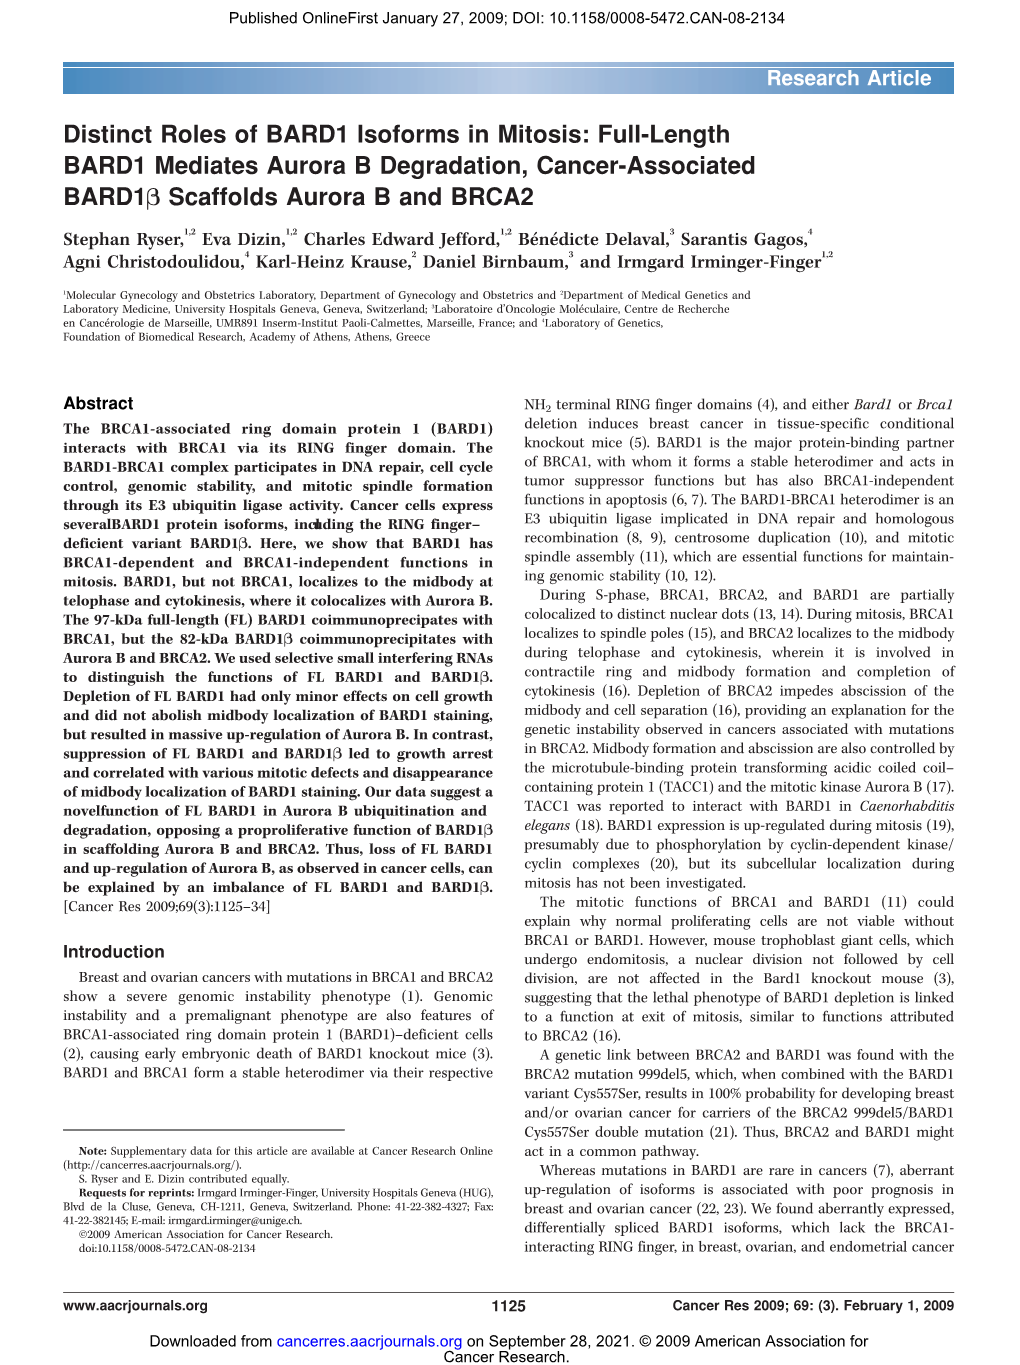 Full-Length BARD1 Mediates Aurora B Degradation, Cancer-Associated BARD1B Scaffolds Aurora B and BRCA2